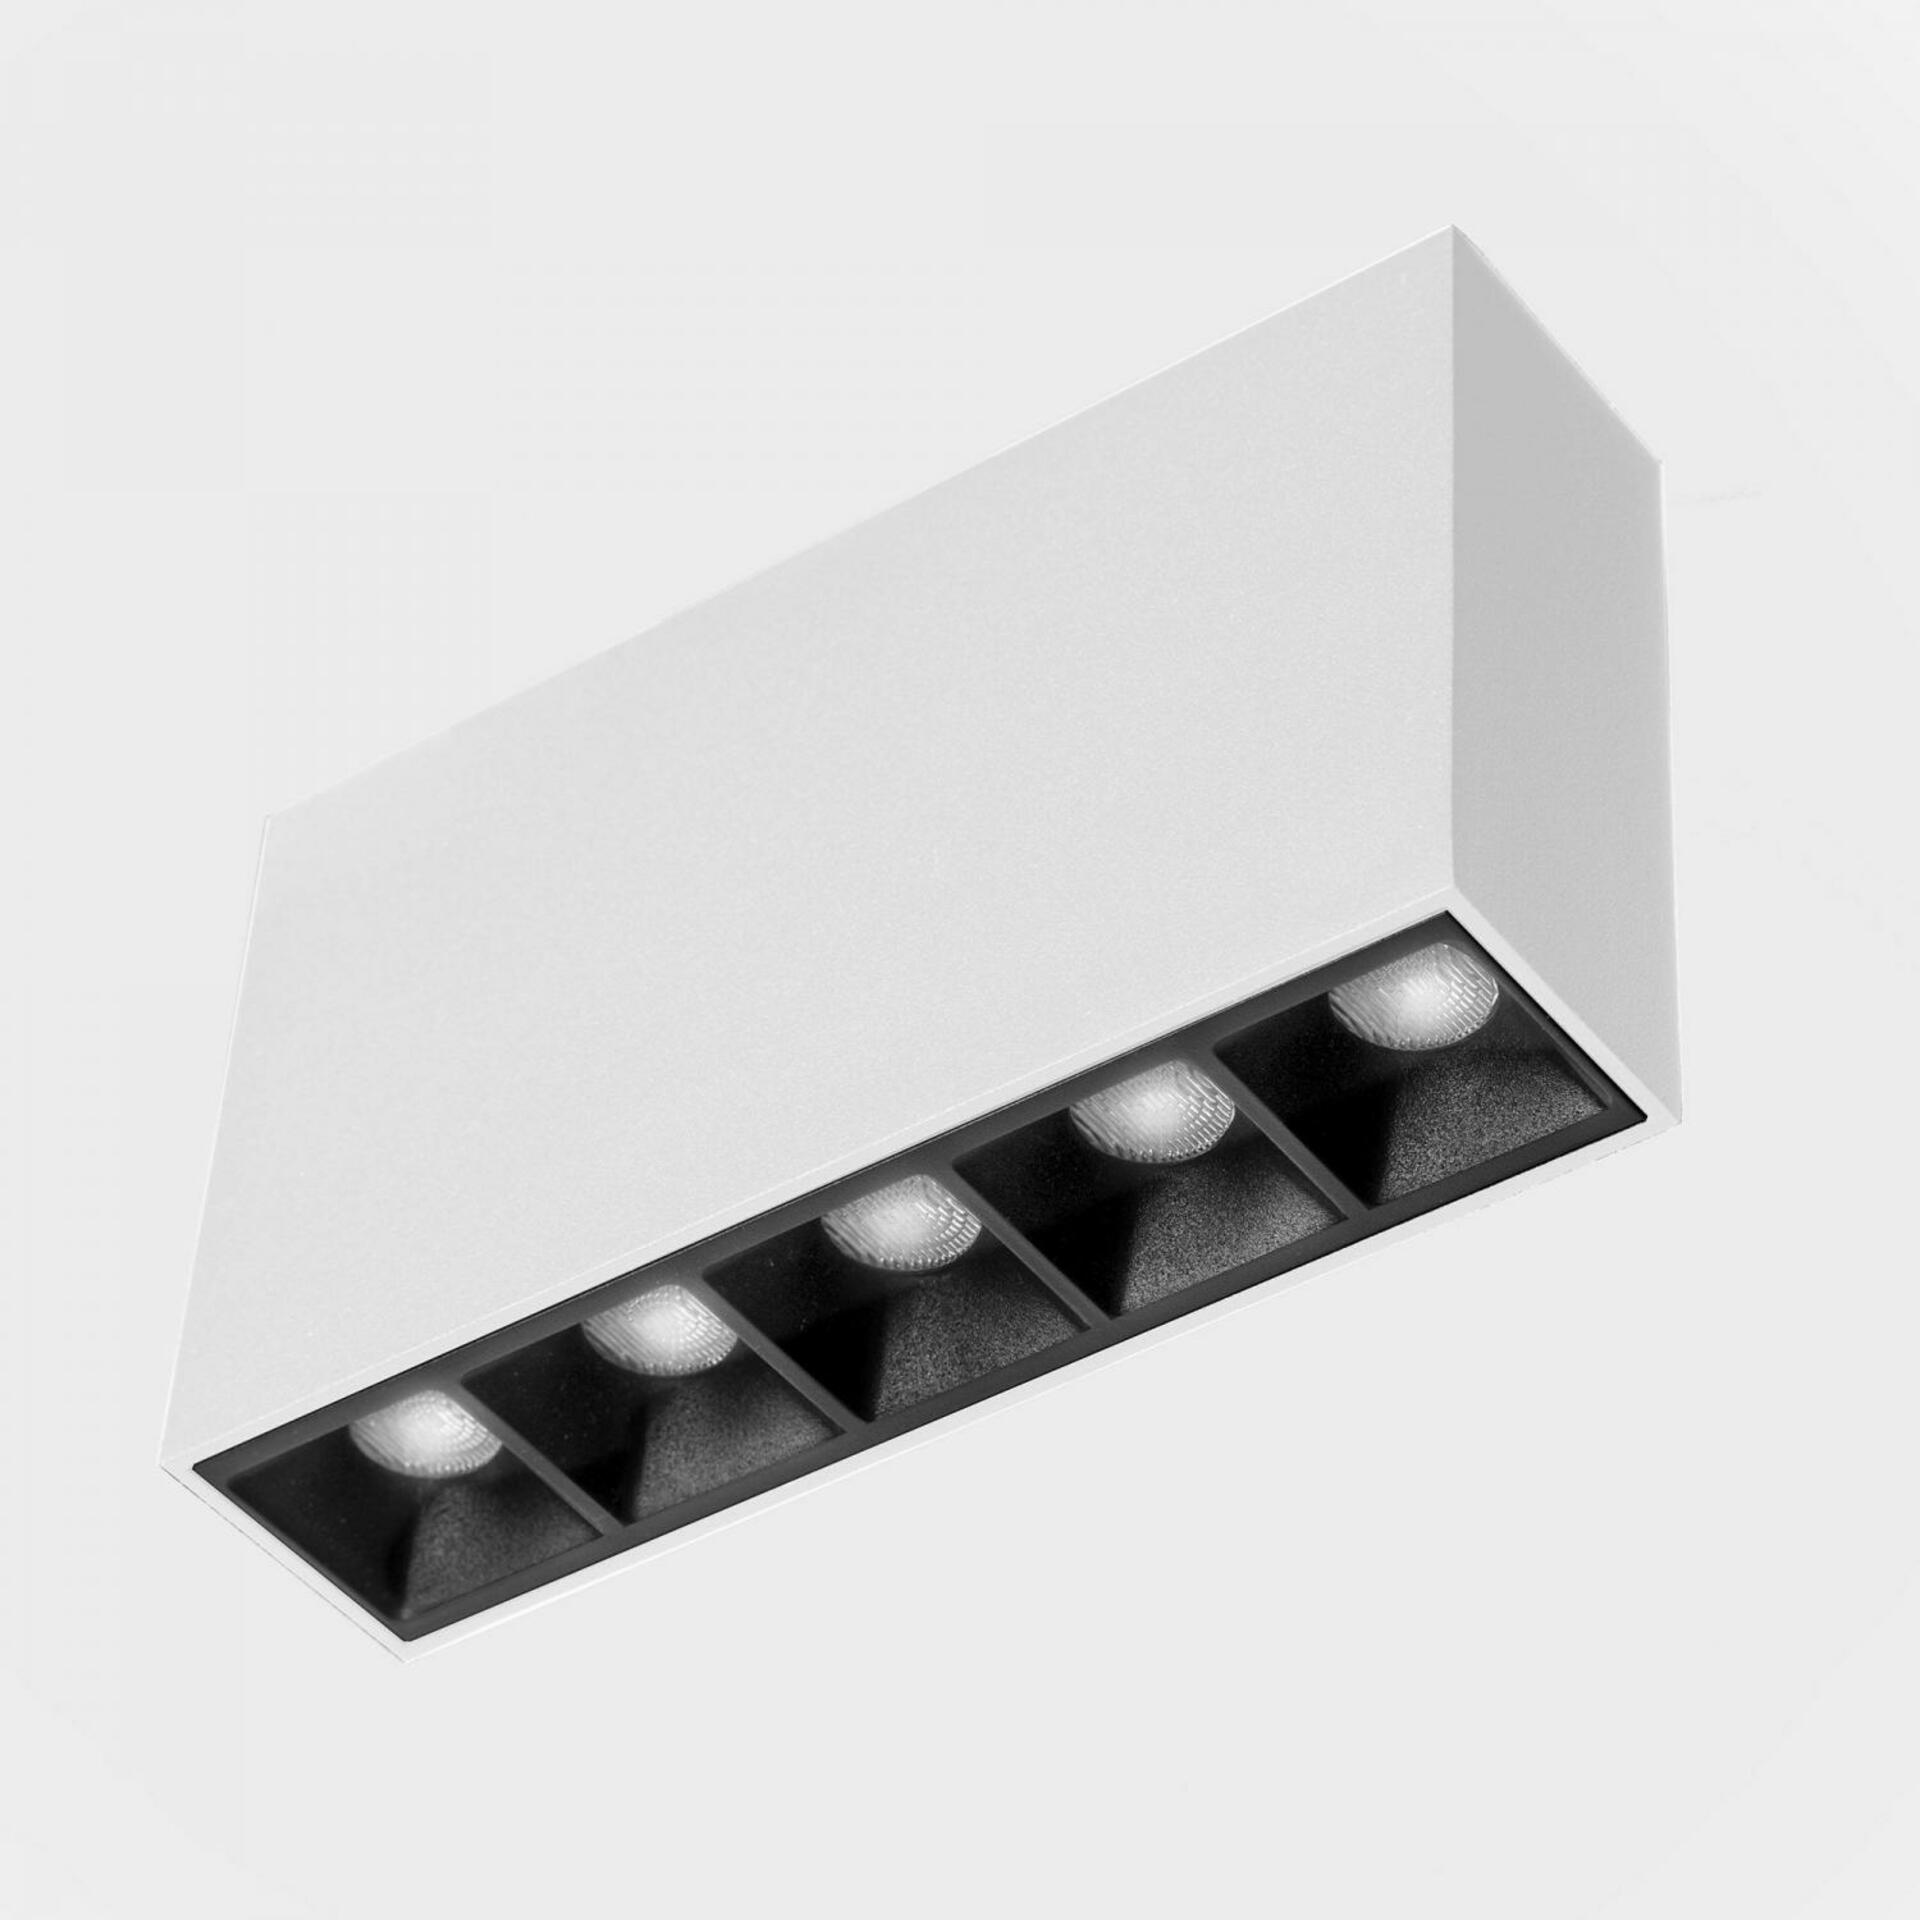 KOHL LIGHTING KOHL-Lighting NSES stropní svítidlo 137x35 mm bílá-černá 10 W CRI 90 2700K Non-Dimm